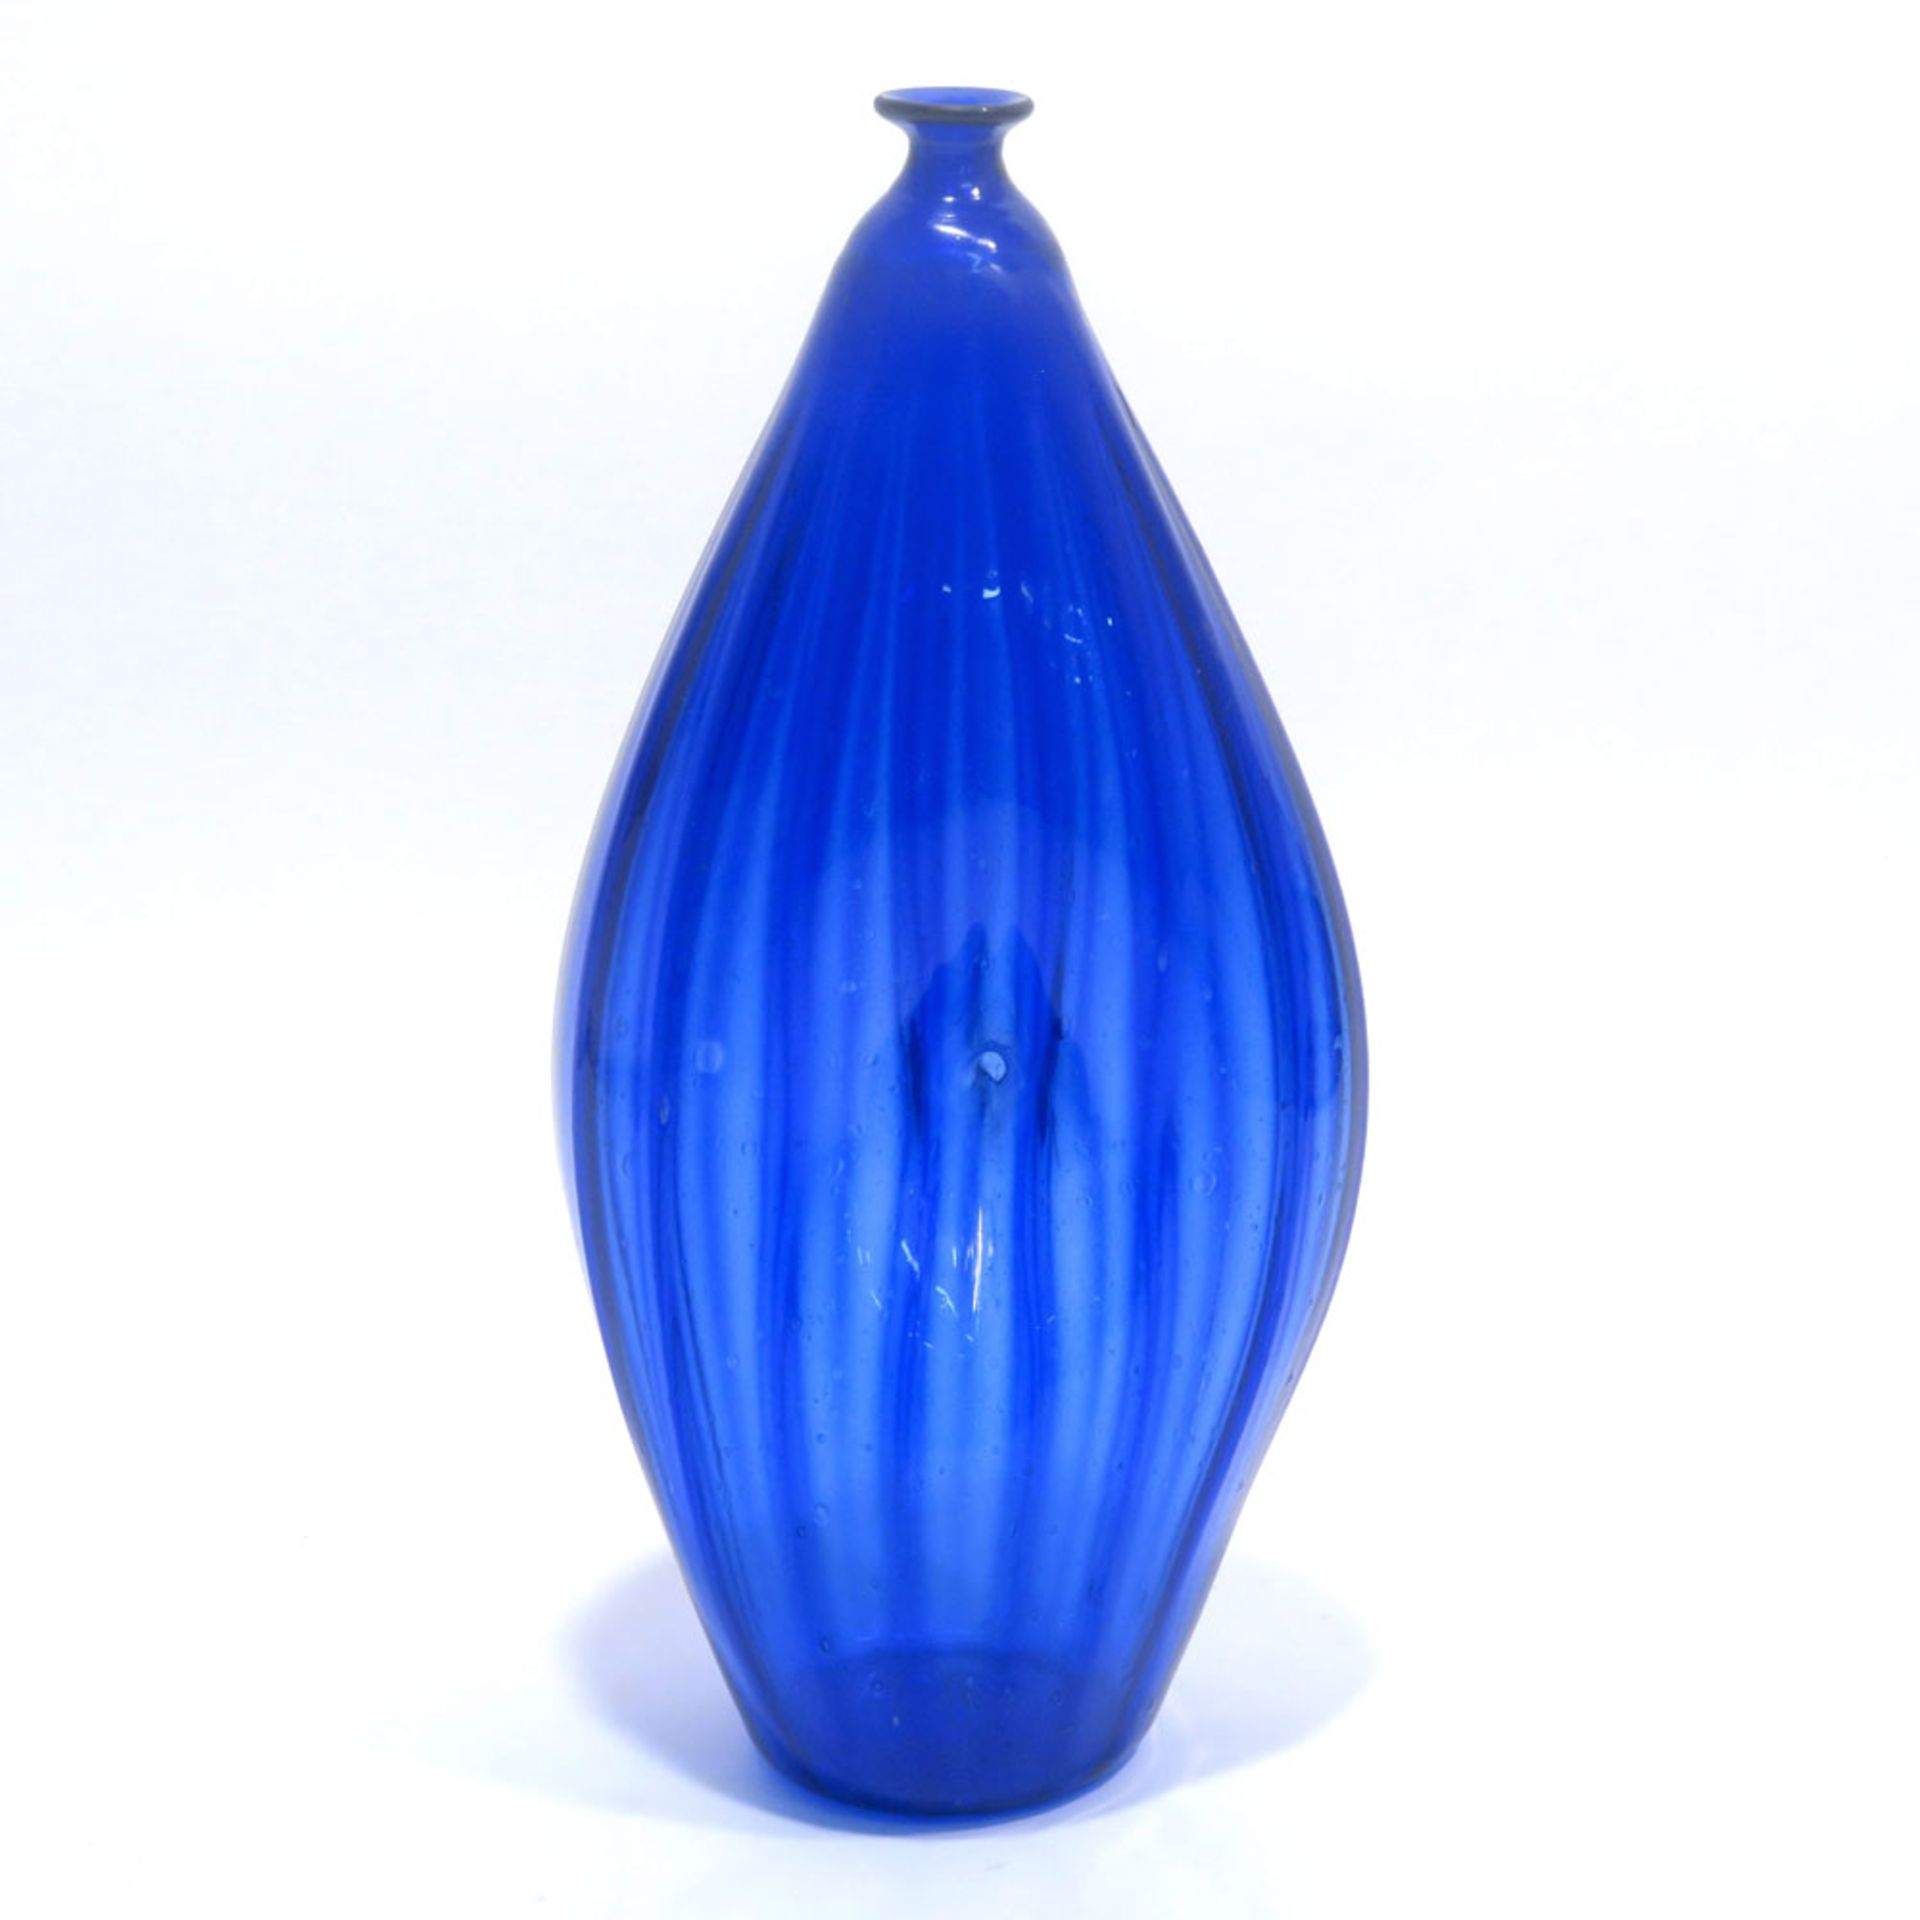 NabelflascheAlpenländisch. Blaues Glas mit leicht hochgestochenem Boden, Wandung gerippt und